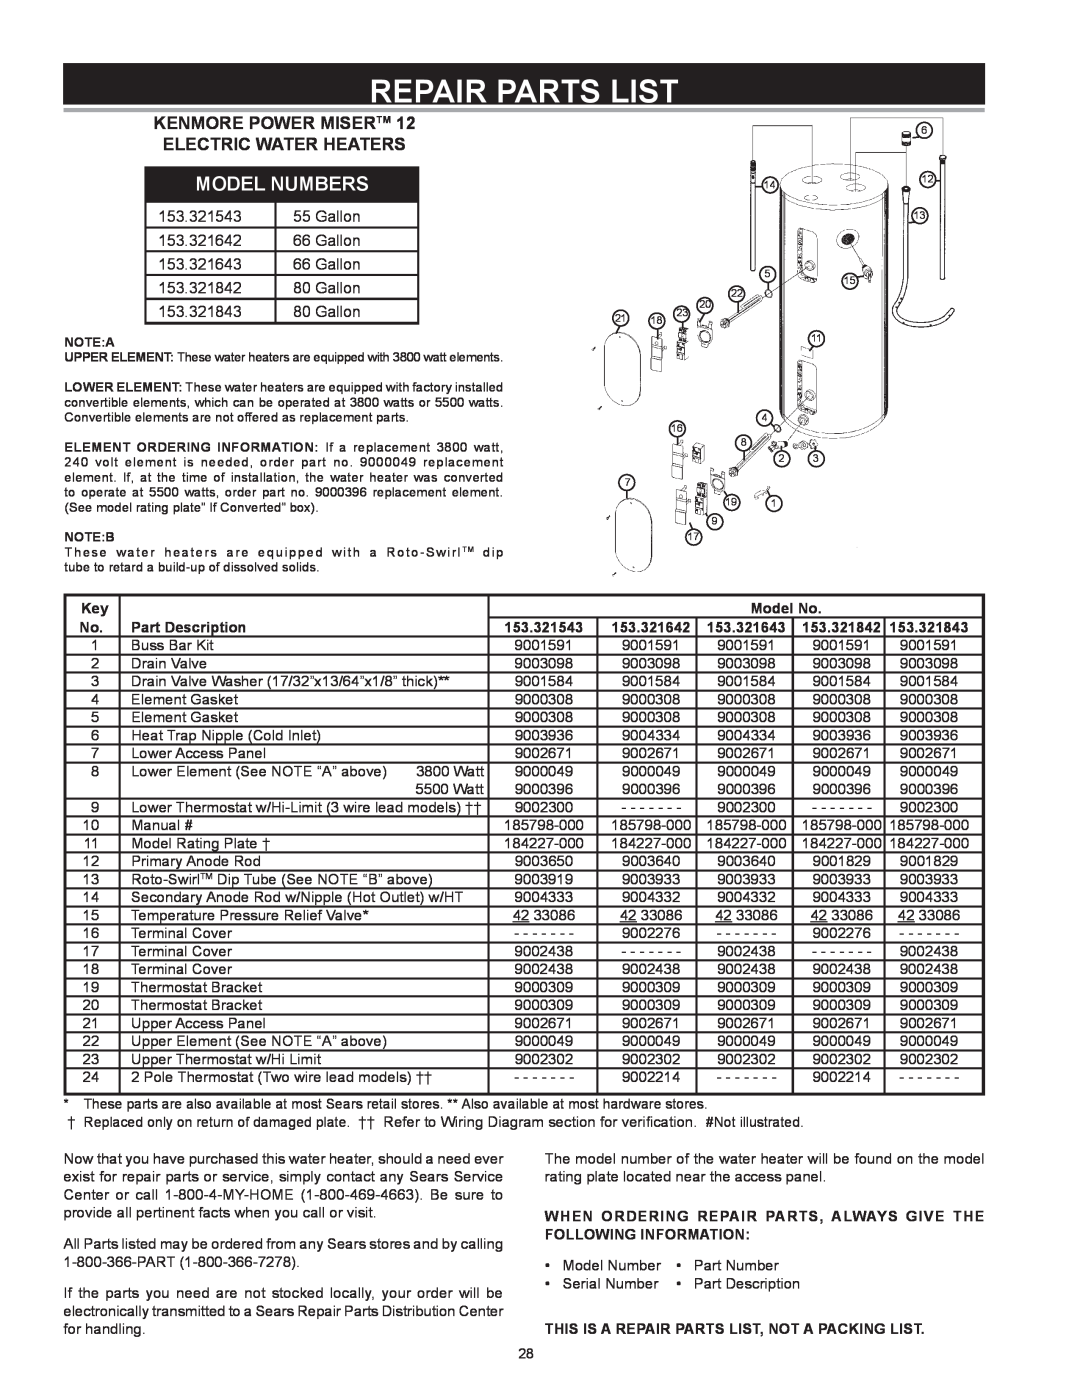 Kenmore 153 owner manual Kenmore Power Misertm Electric Water Heaters, Repair Parts List, Model Numbers 